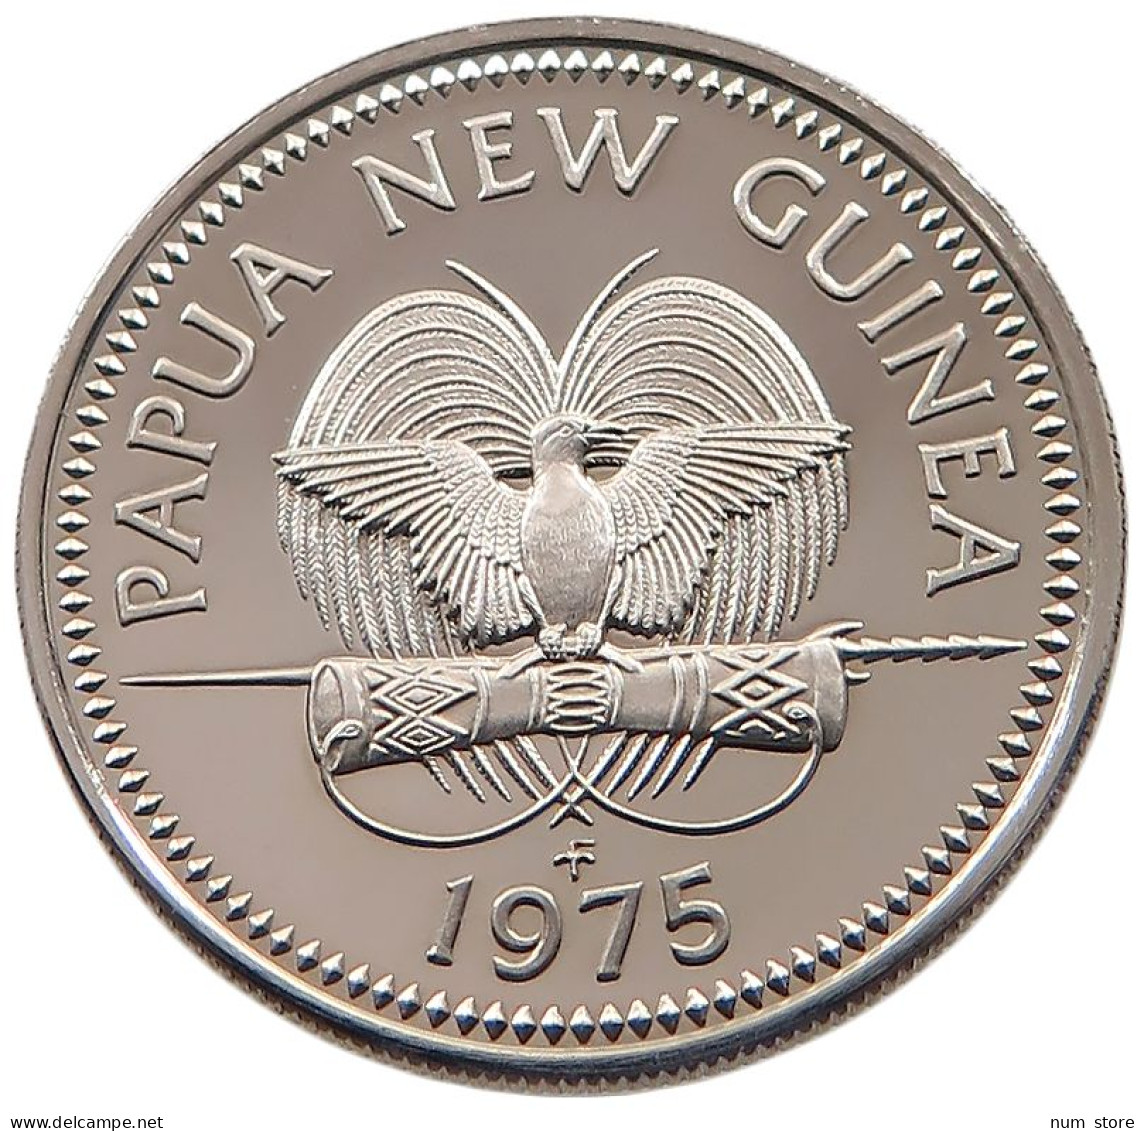 NEW GUINEA 10 TOEA 1975  #alb061 0253 - Papúa Nueva Guinea